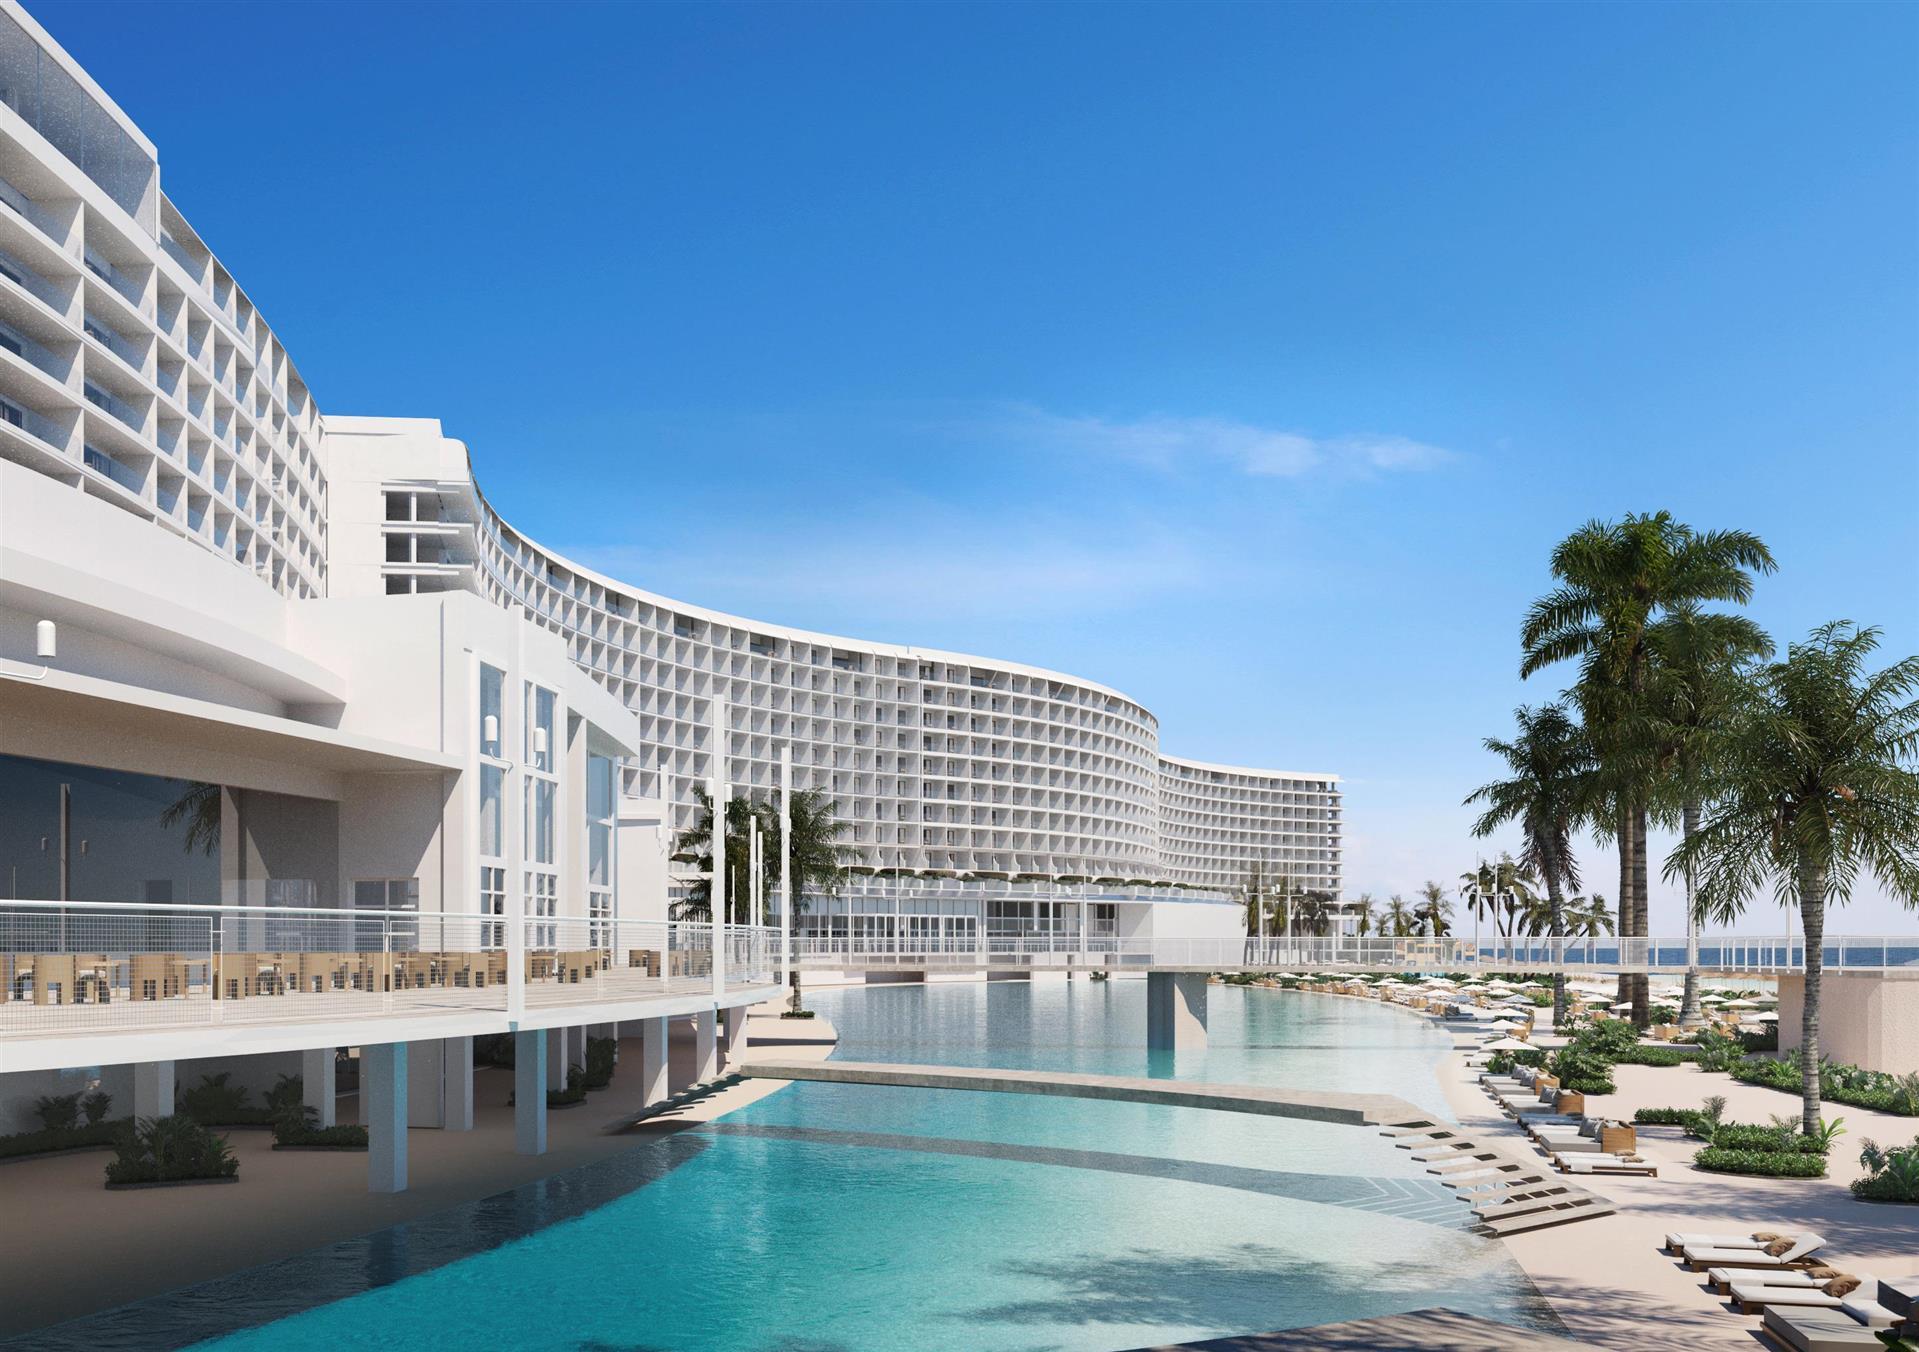 AVA Resort Cancun in Cancun, MX